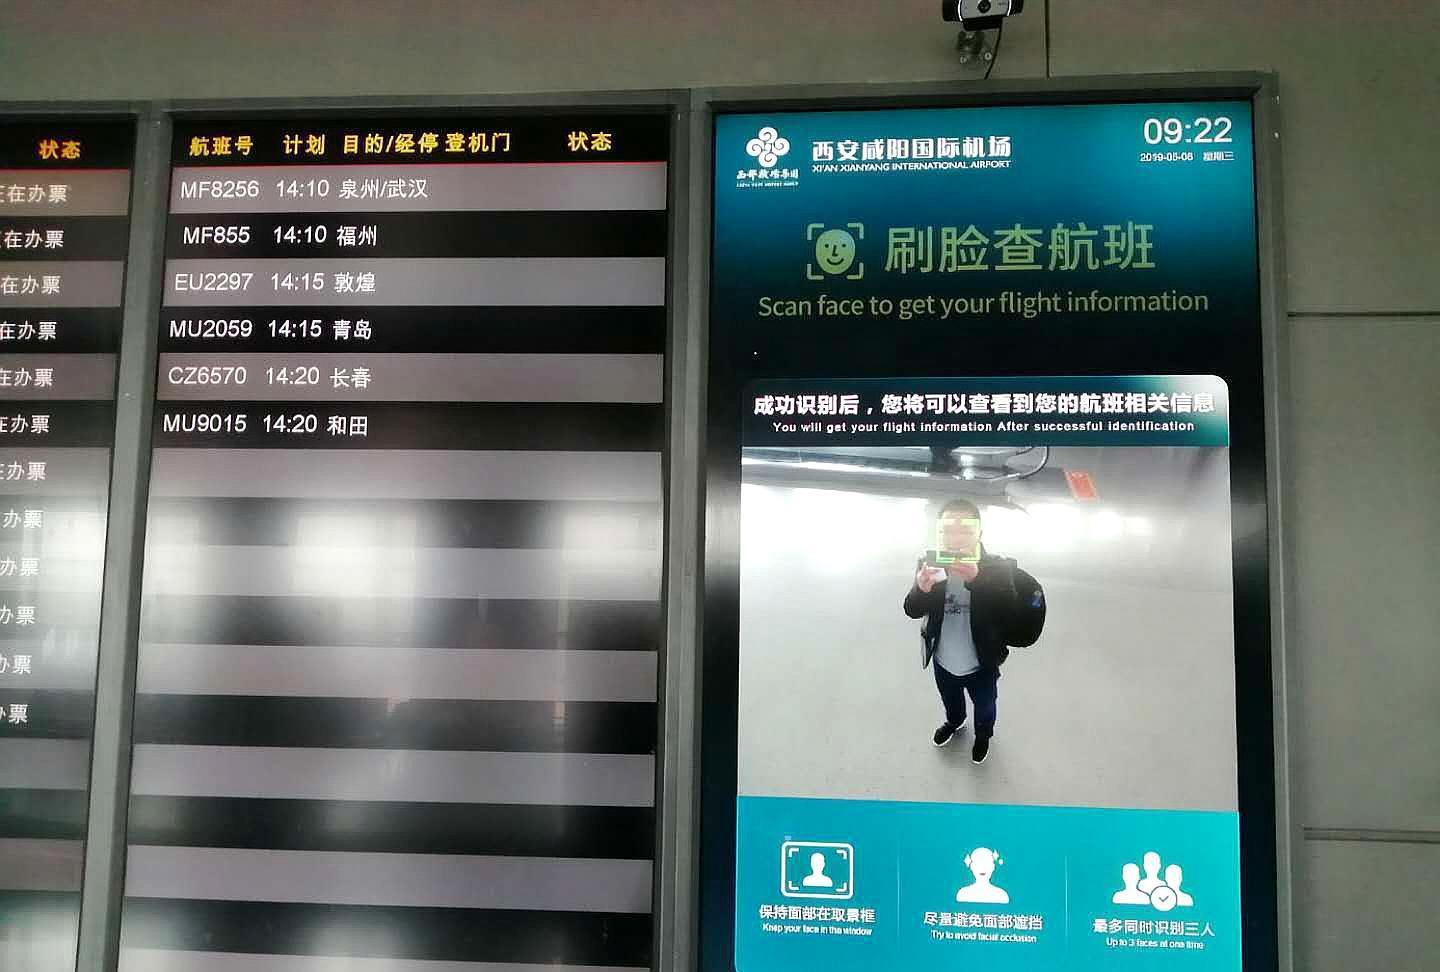 路过西安咸阳机场,发现人脸识别已经先进